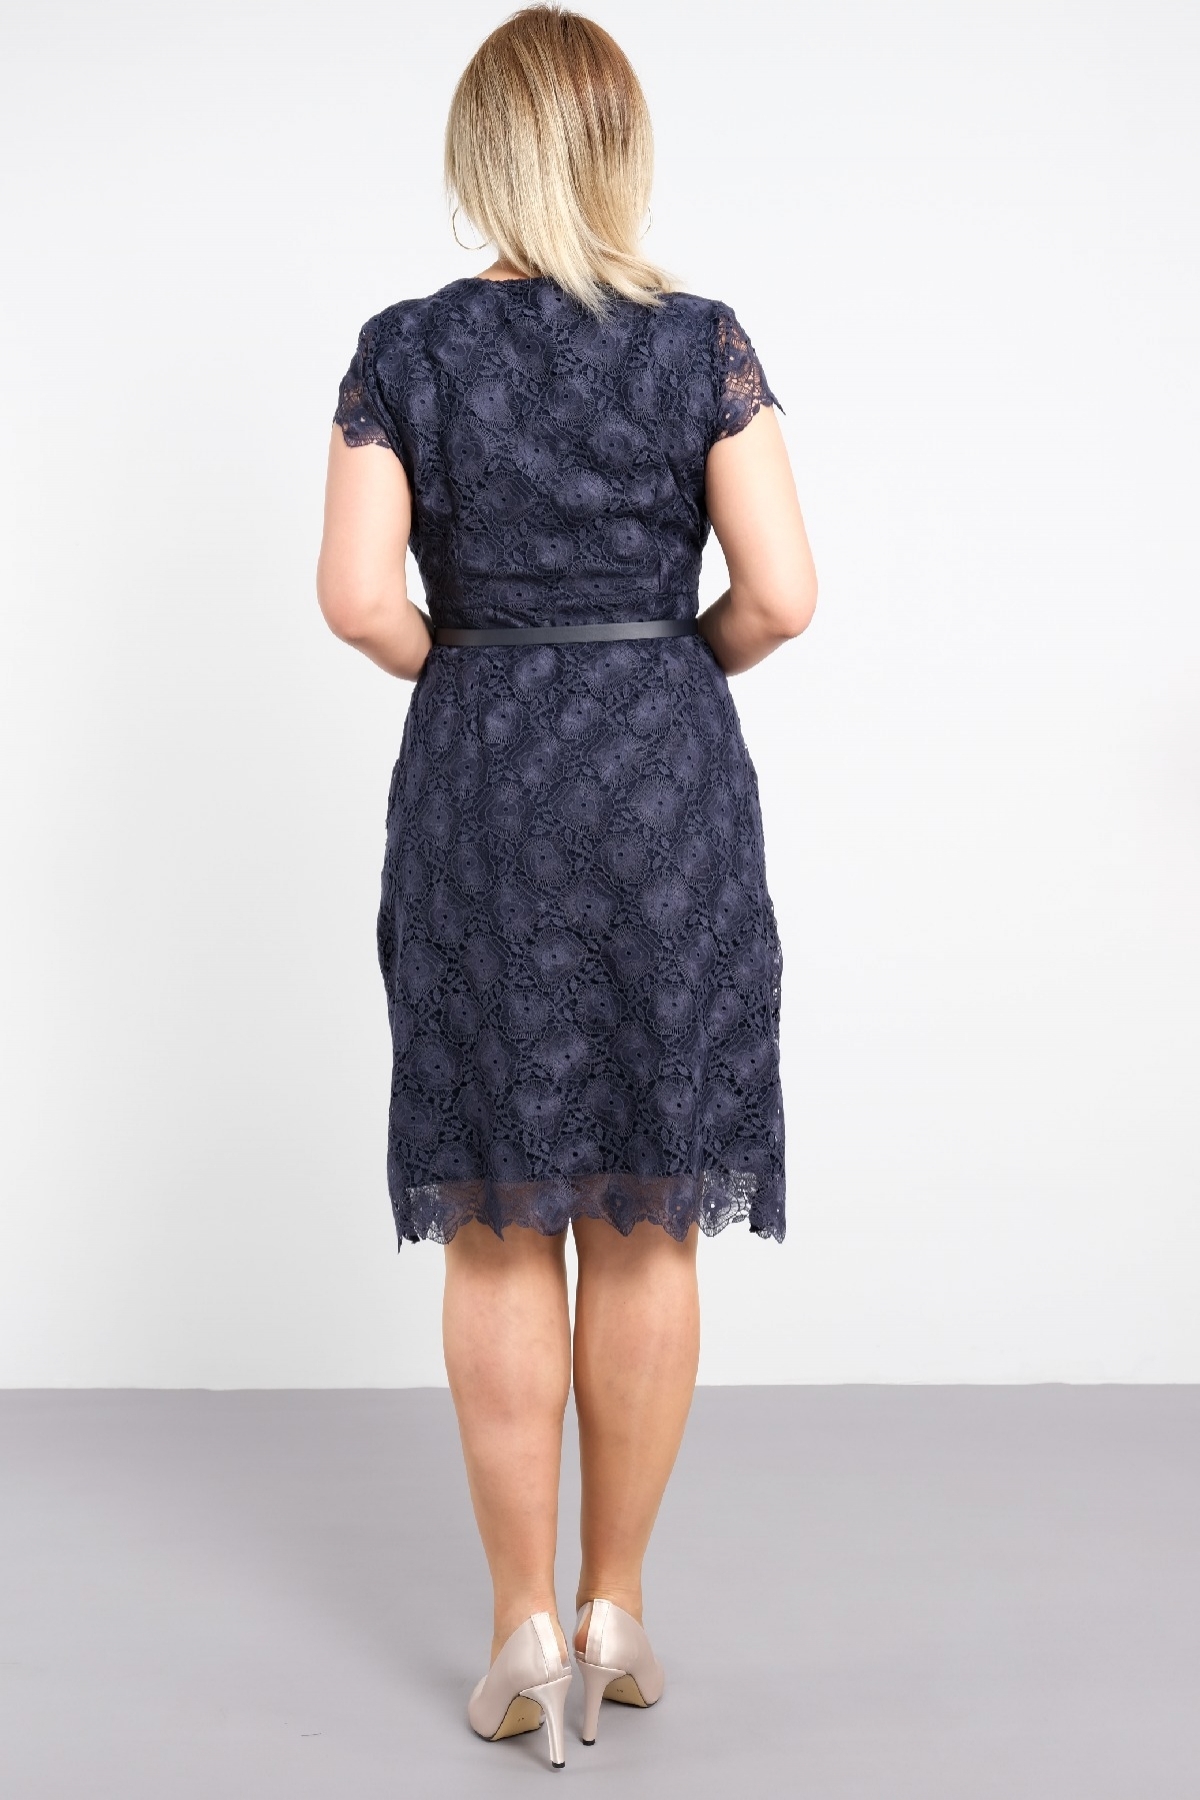 dekolteli çift kat kumaş özellikli motif detaylı dantel ile şık yeni sezon büyük beden elbise 